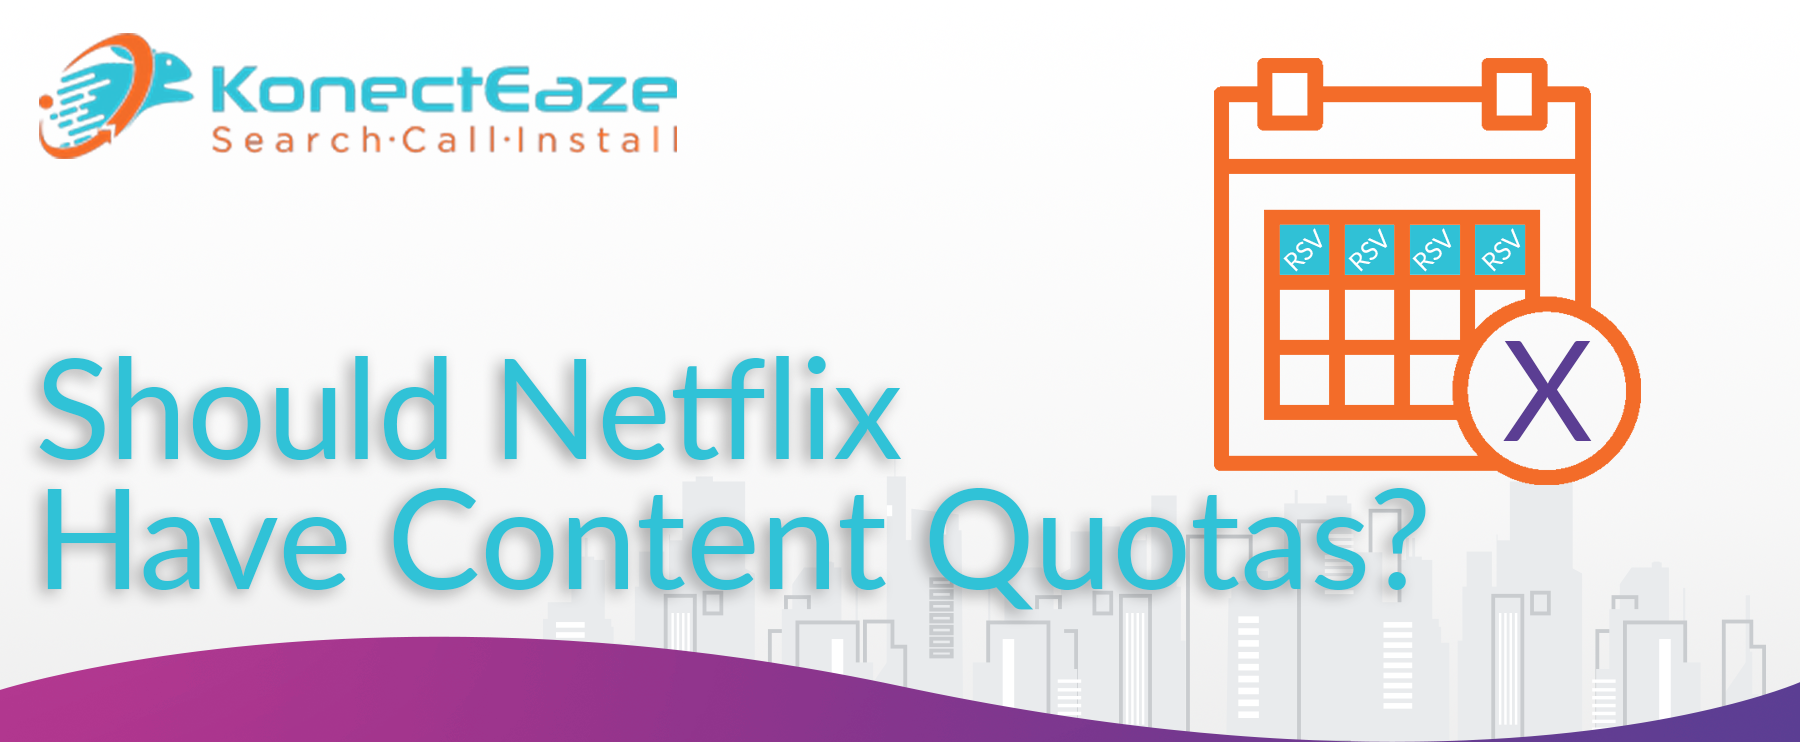 Should Netflix Have Content Quotas?